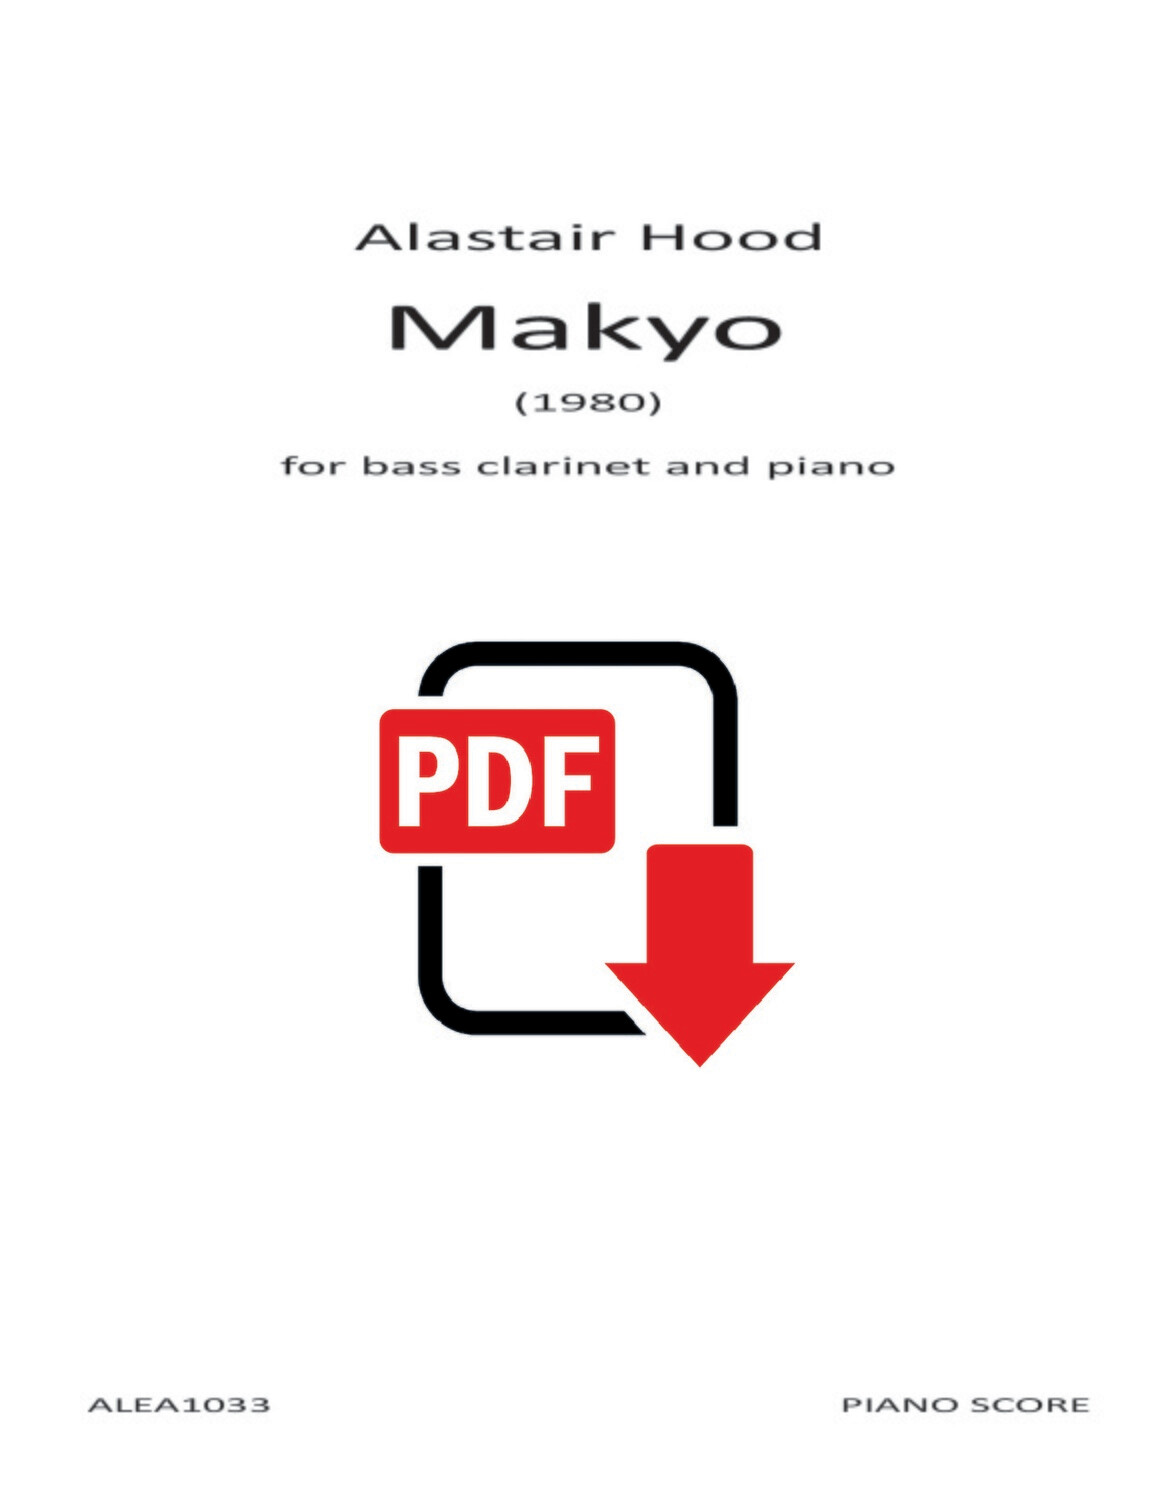 Hood: Makyo (PDF)